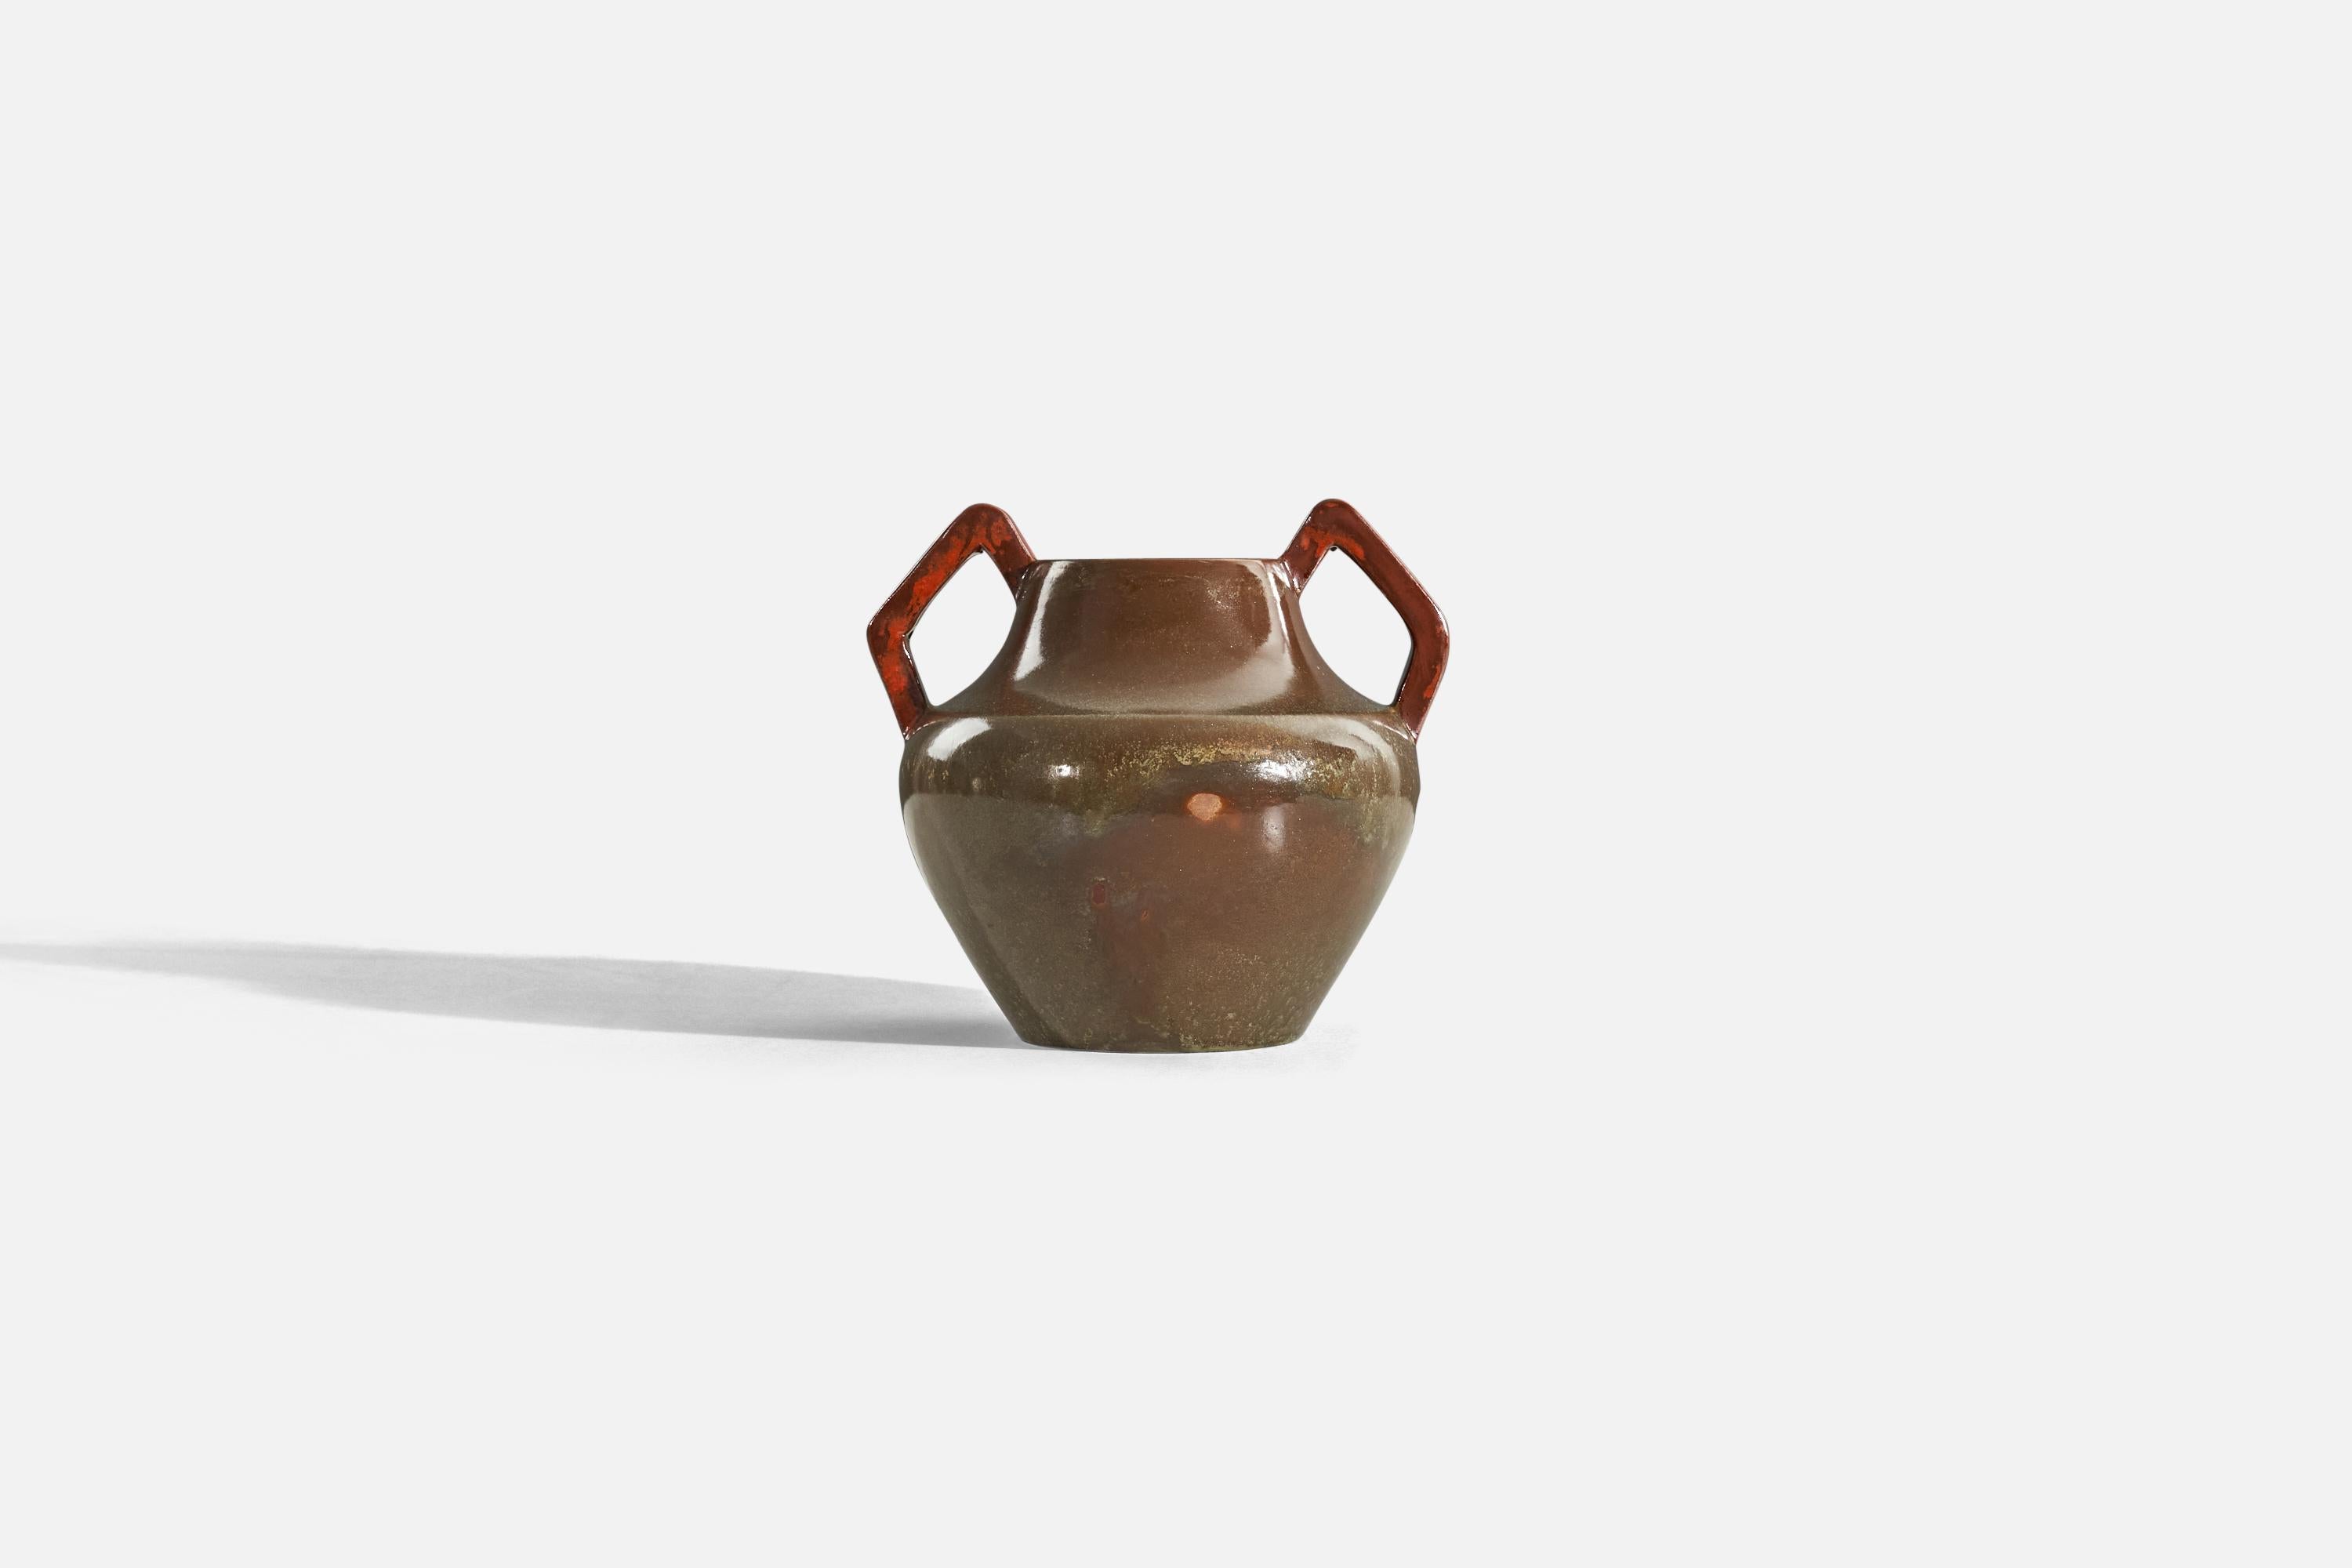 Vase aus braunem, glasiertem Steingut, entworfen und hergestellt von Nyman & Nyman, Höganäs, Schweden, um 1940.